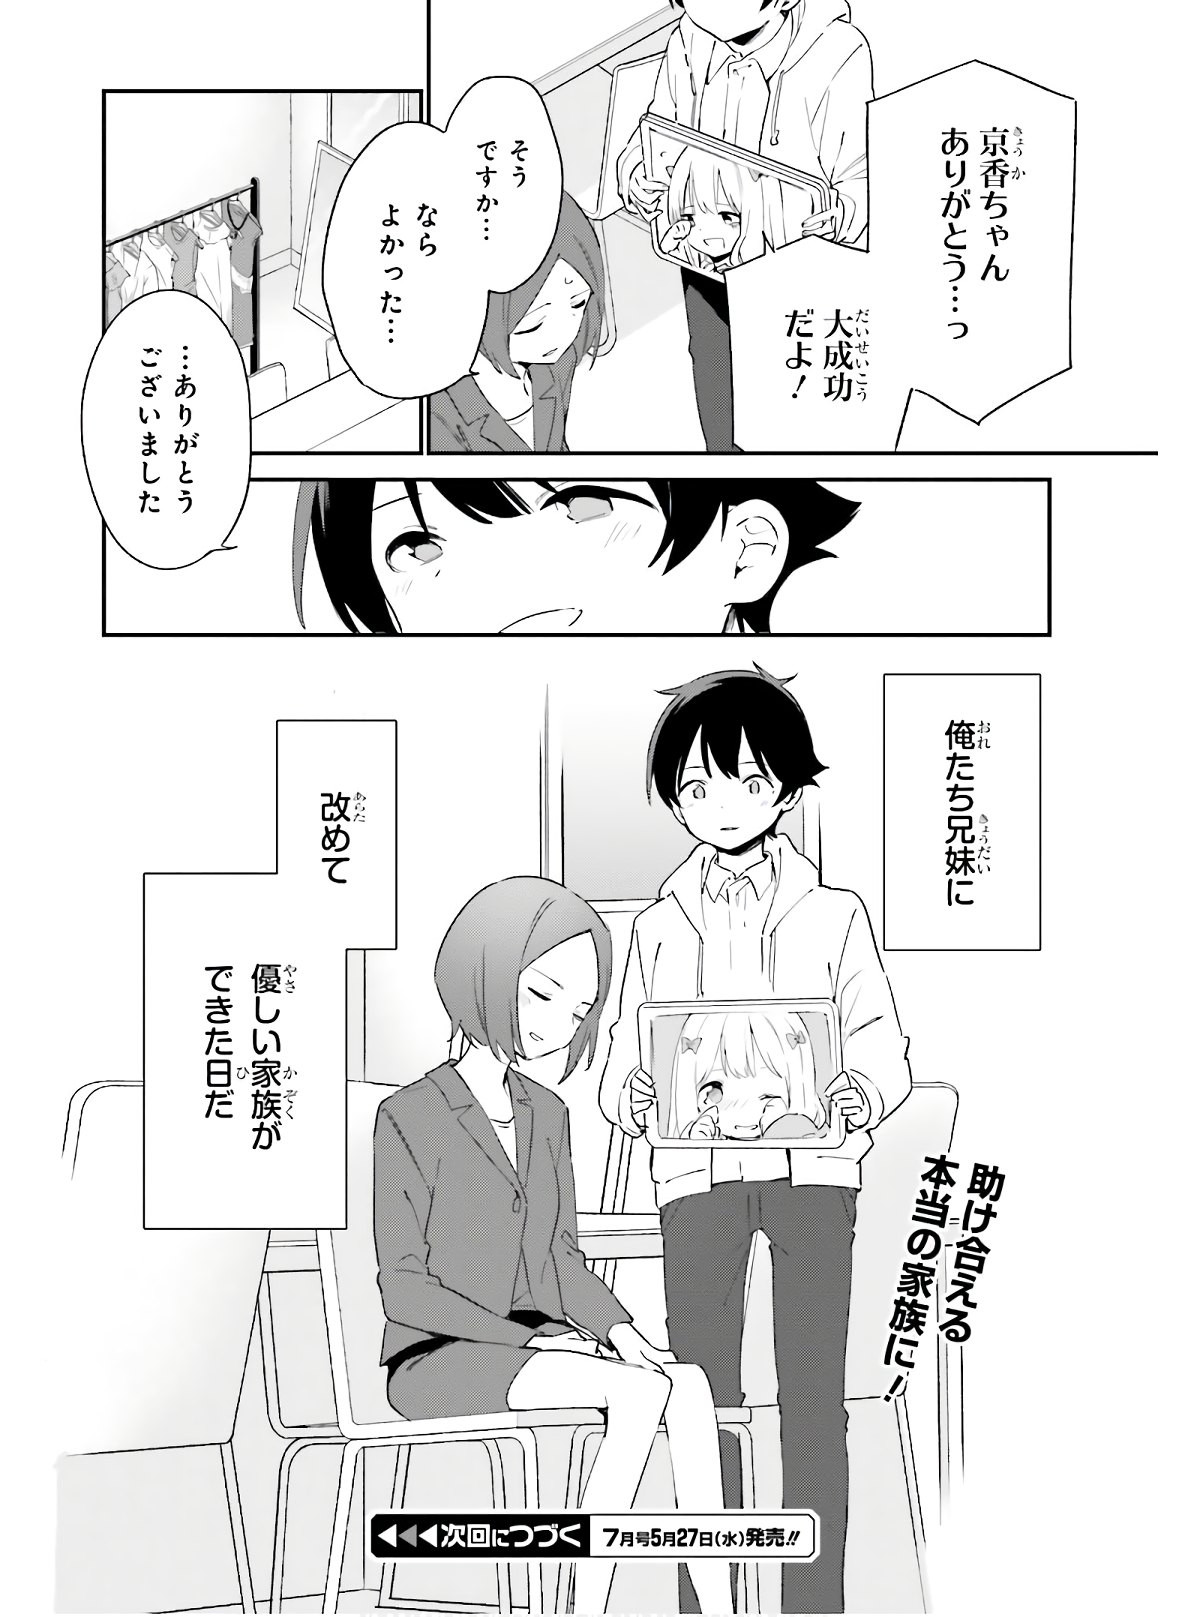 Ero Manga Sensei - Chapter 67 - Page 26